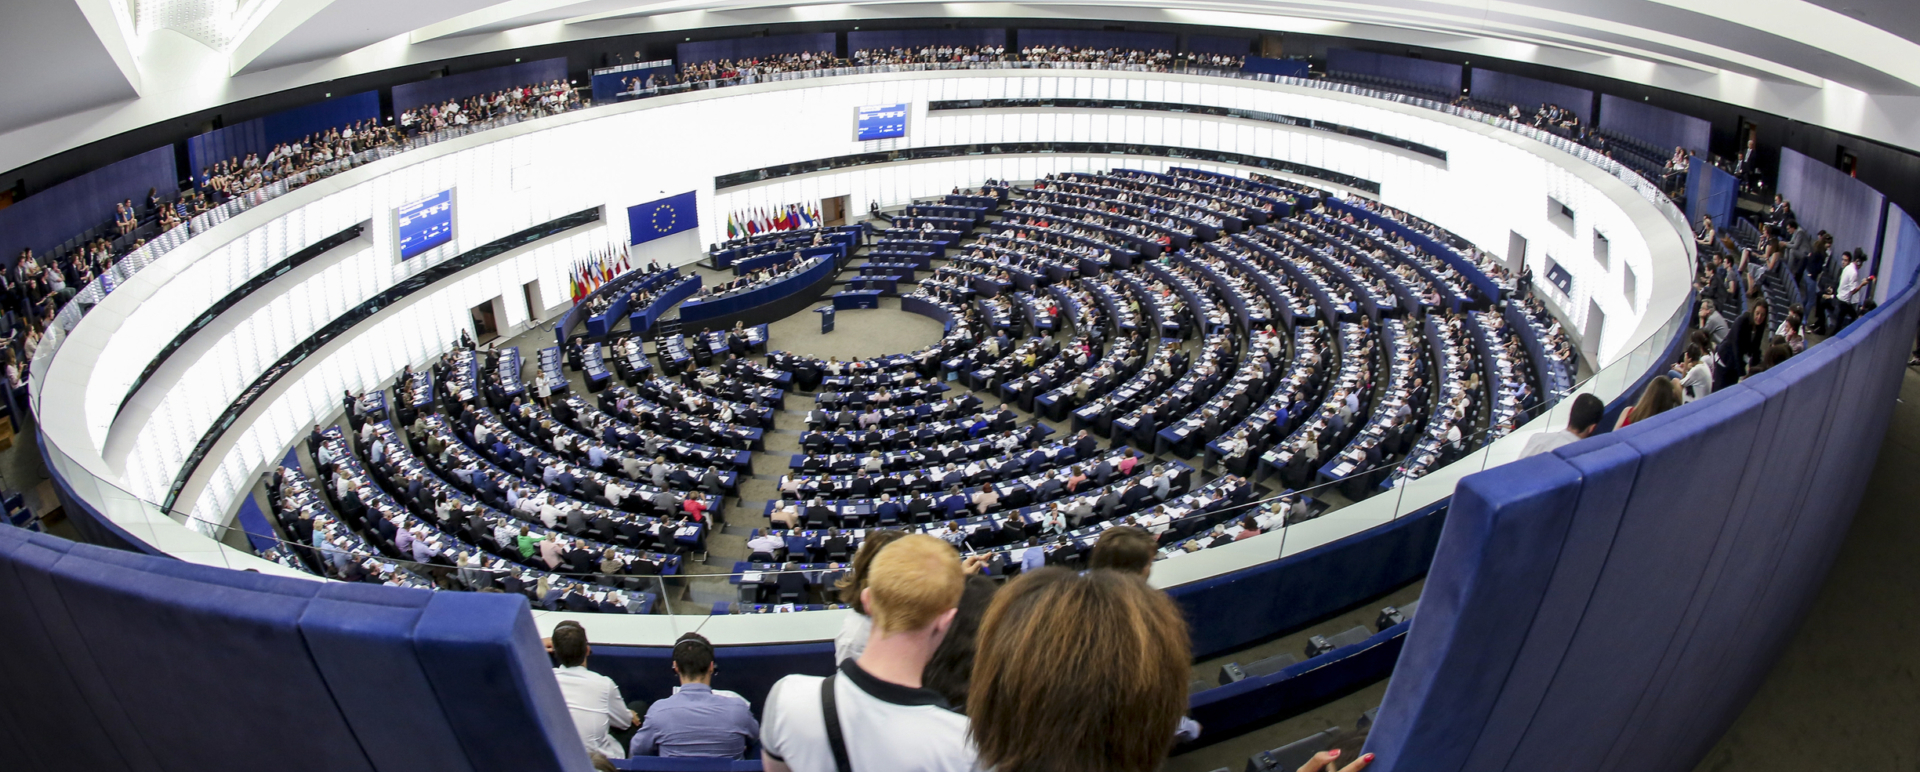 Hémicycle du Parlement Européen